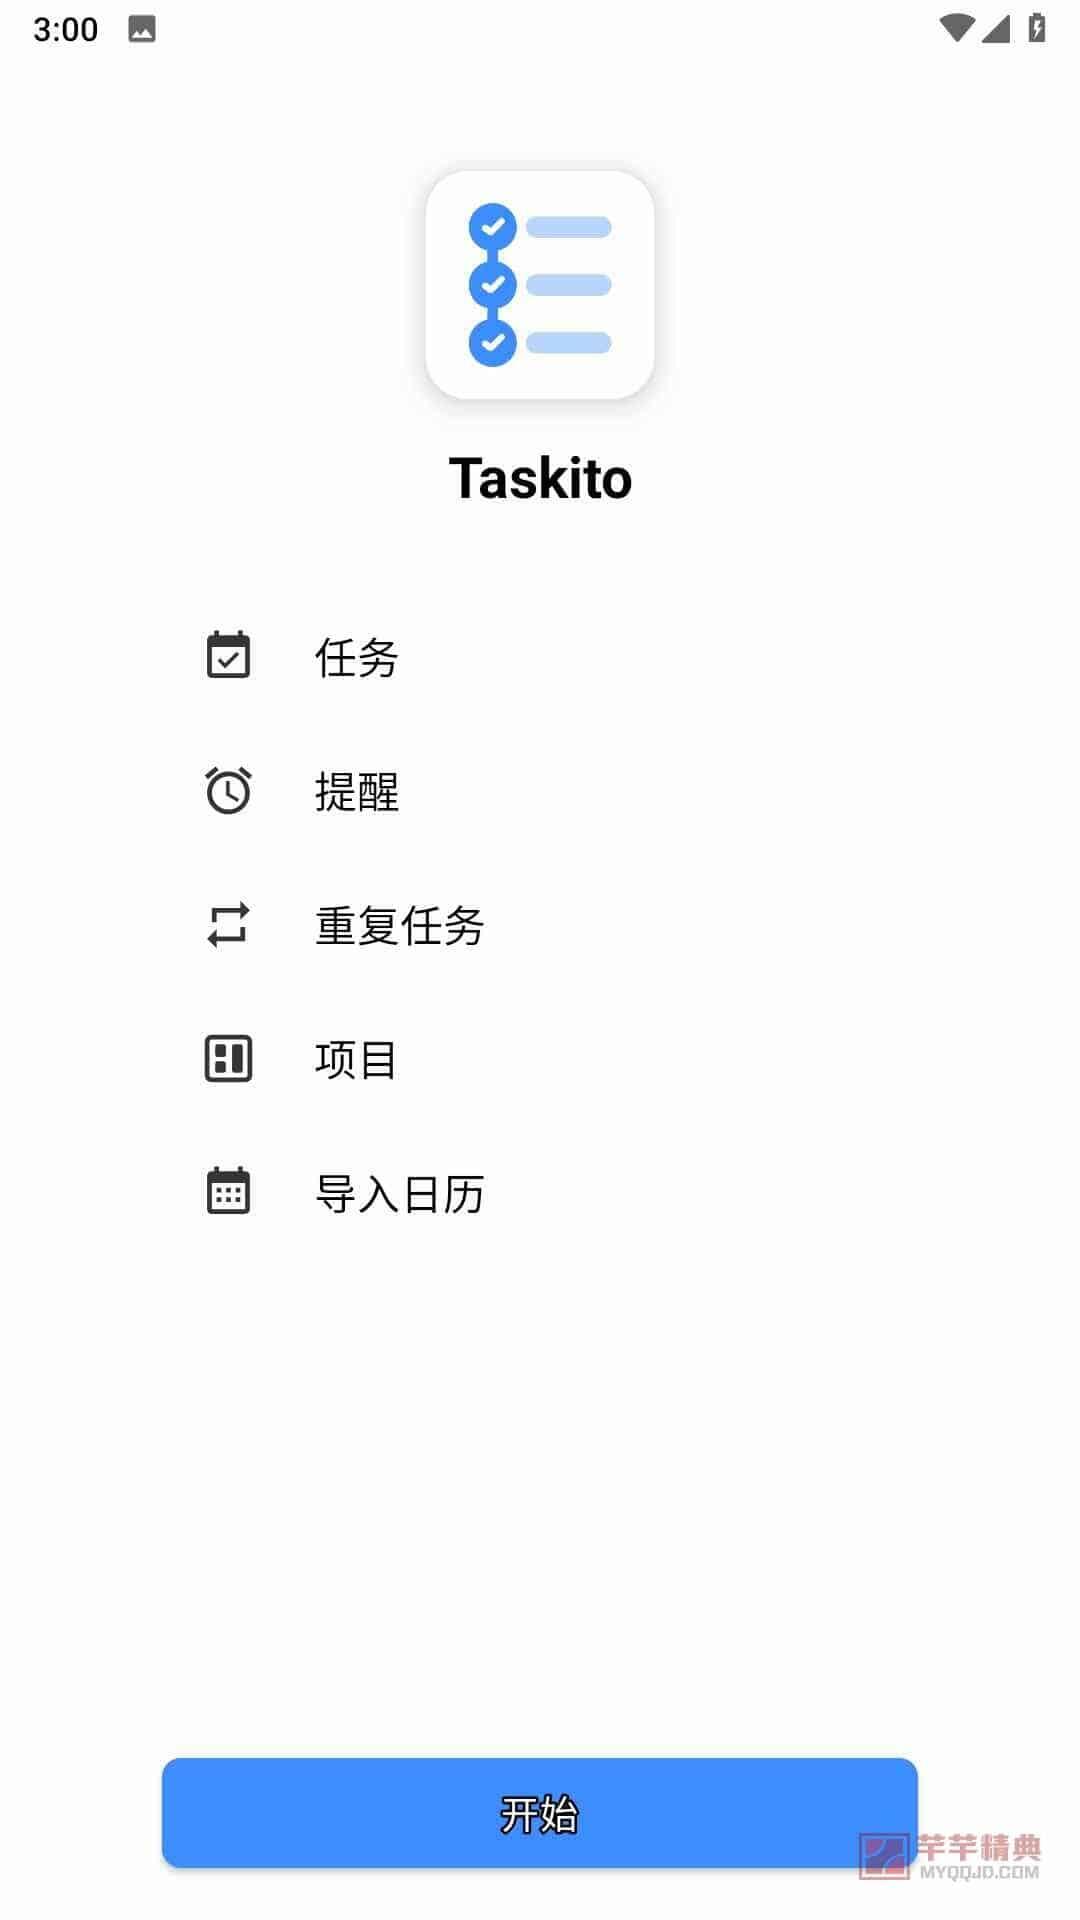 Taskito: To-Do List, Planner v1.0.9 for Android 解锁高级版